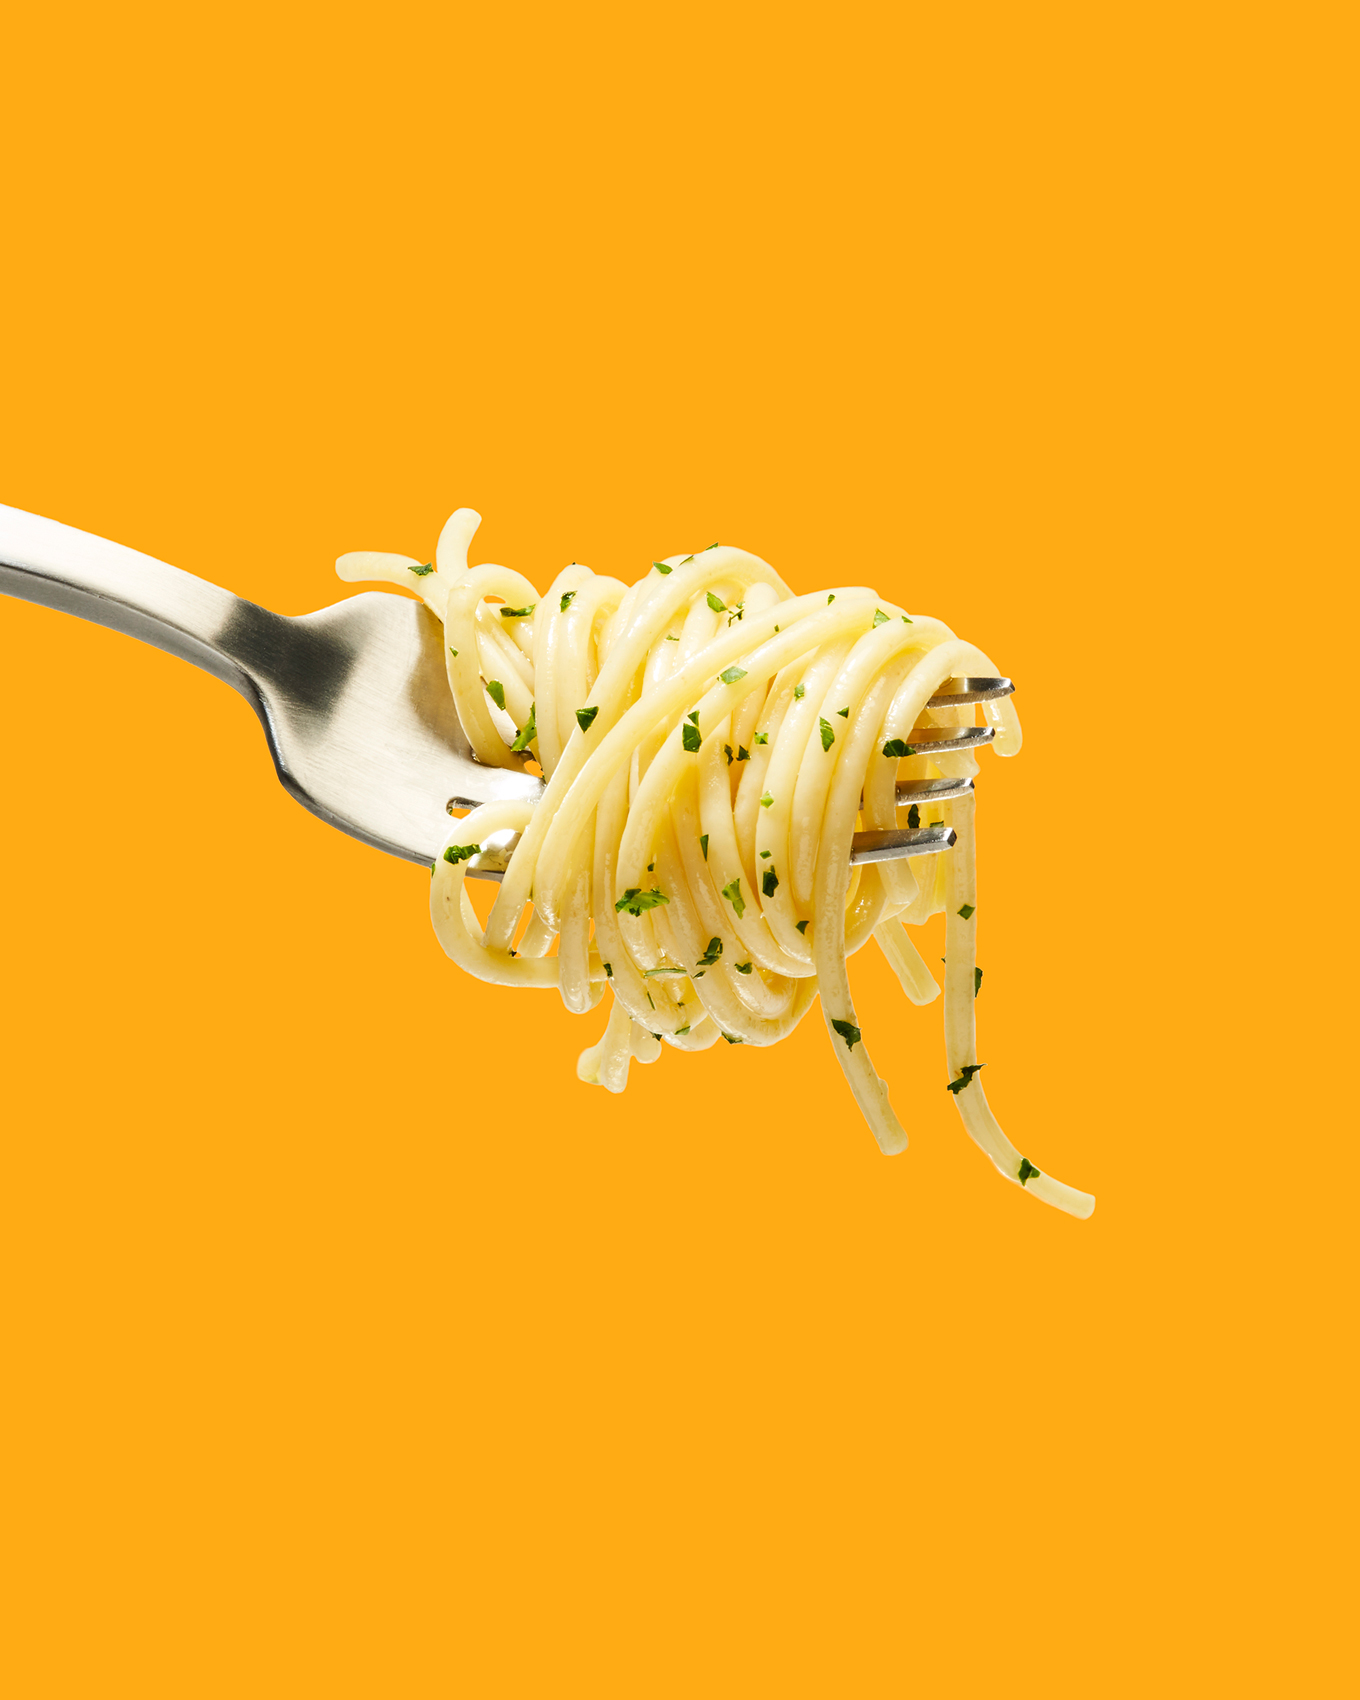 deepi-ahluwalia-goodwheat-spaghetti-fork-web